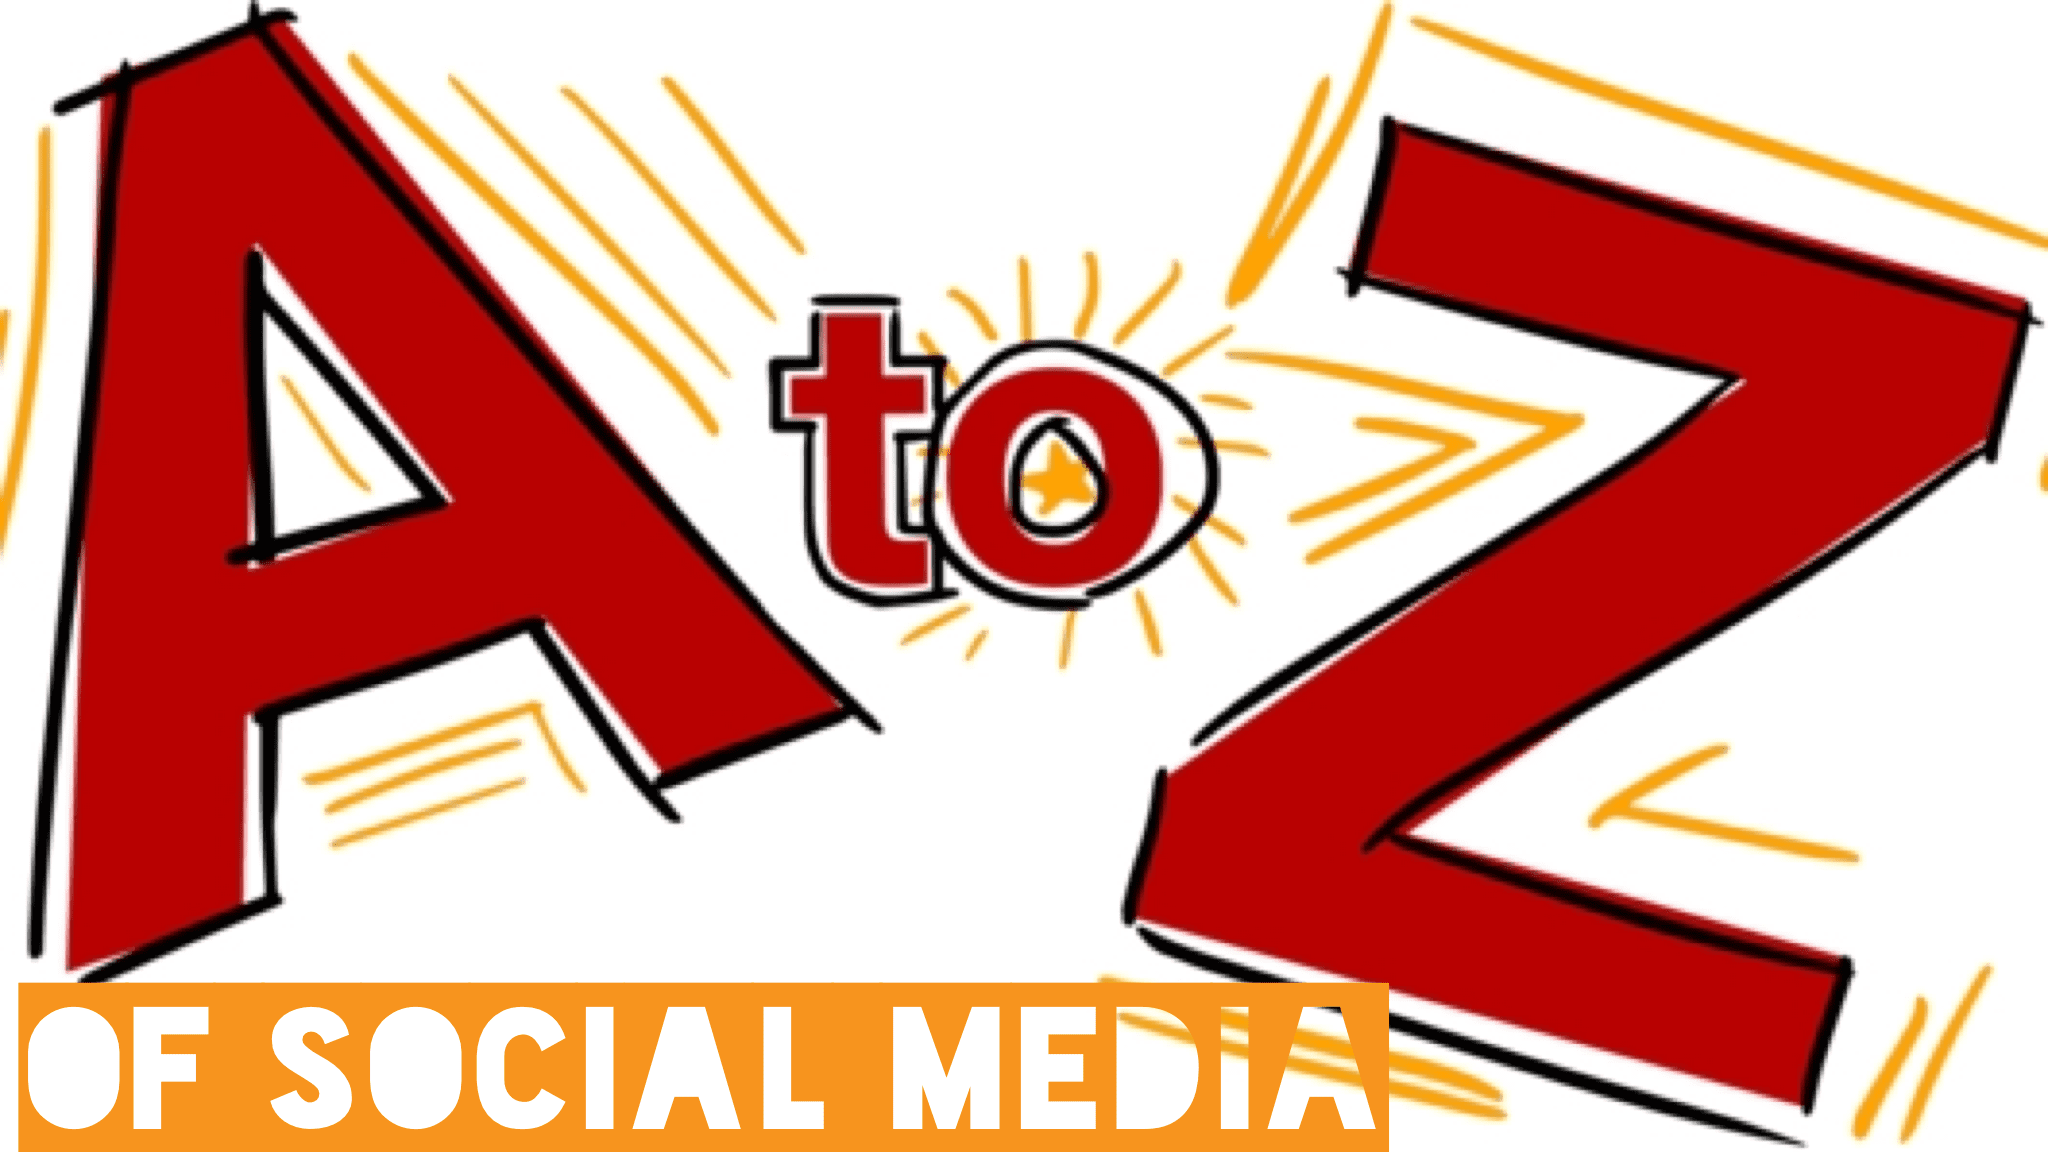 A-Z of Social Media 2016